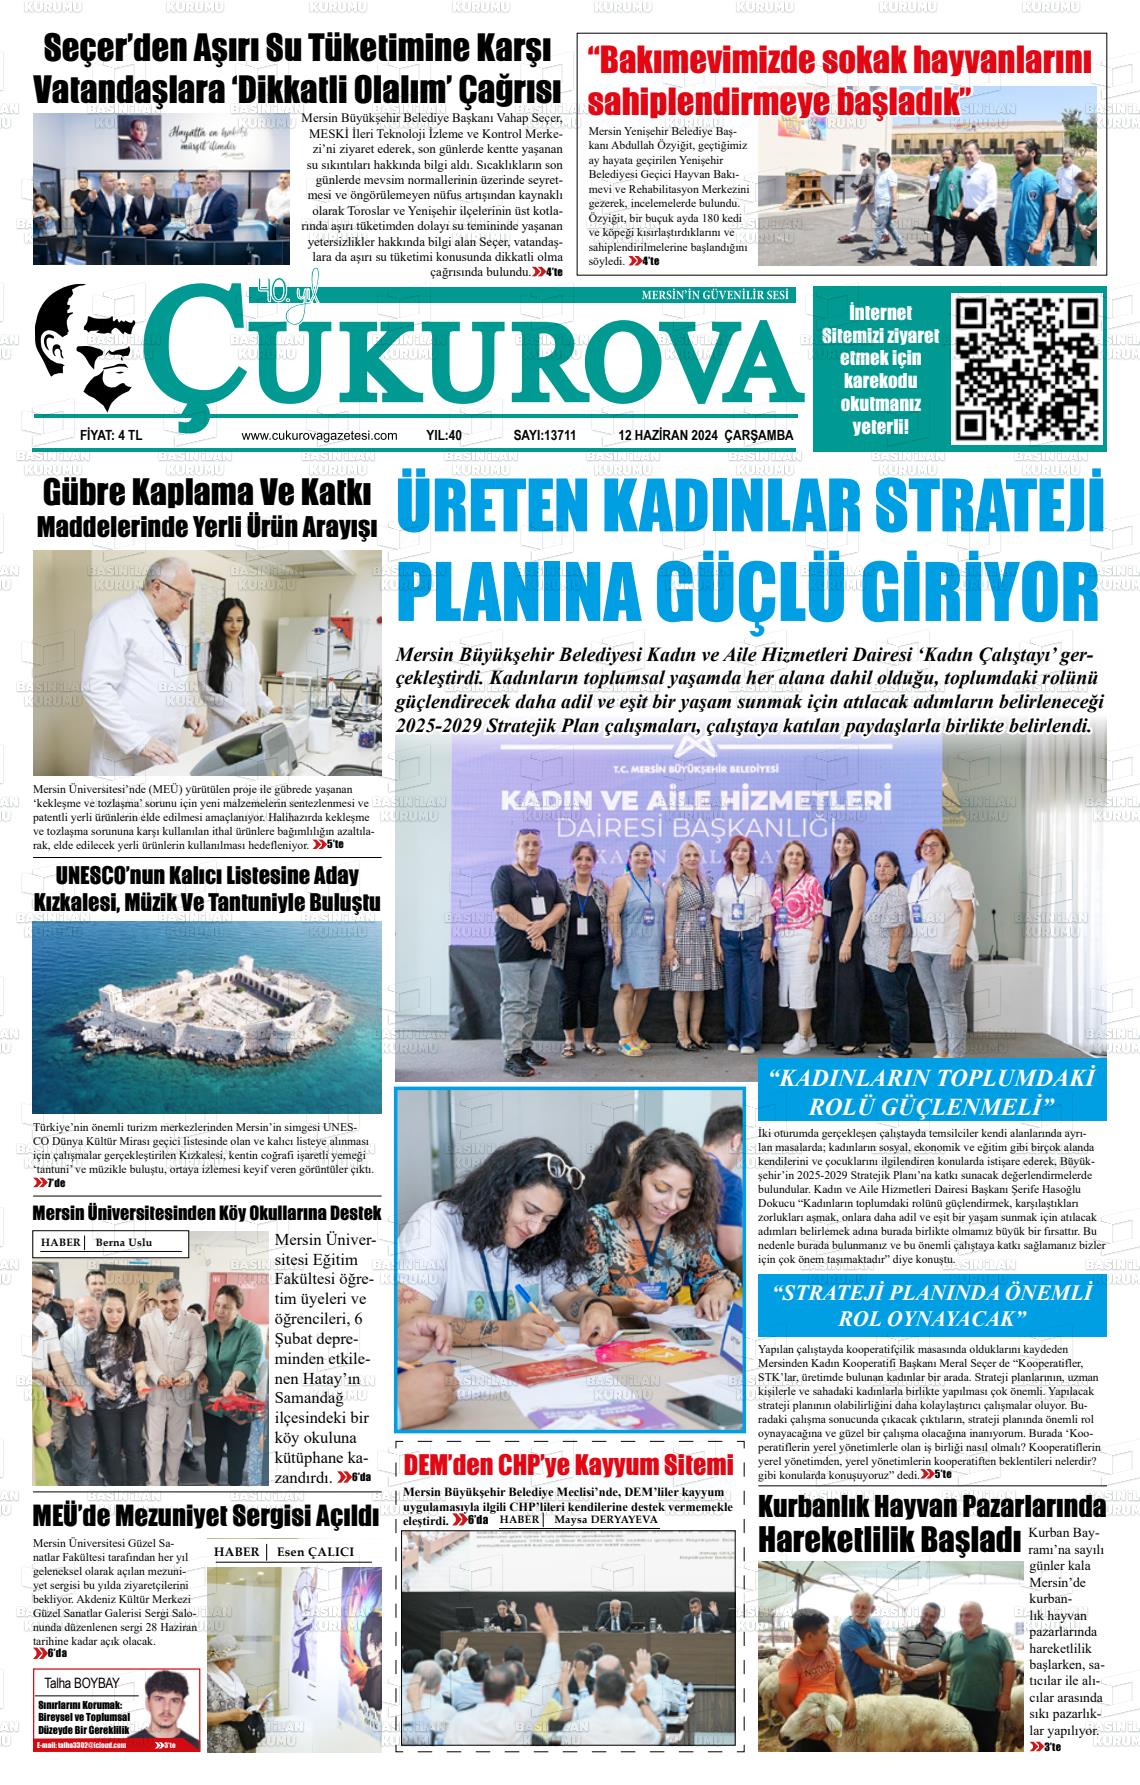 ÇUKUROVA Gazetesi